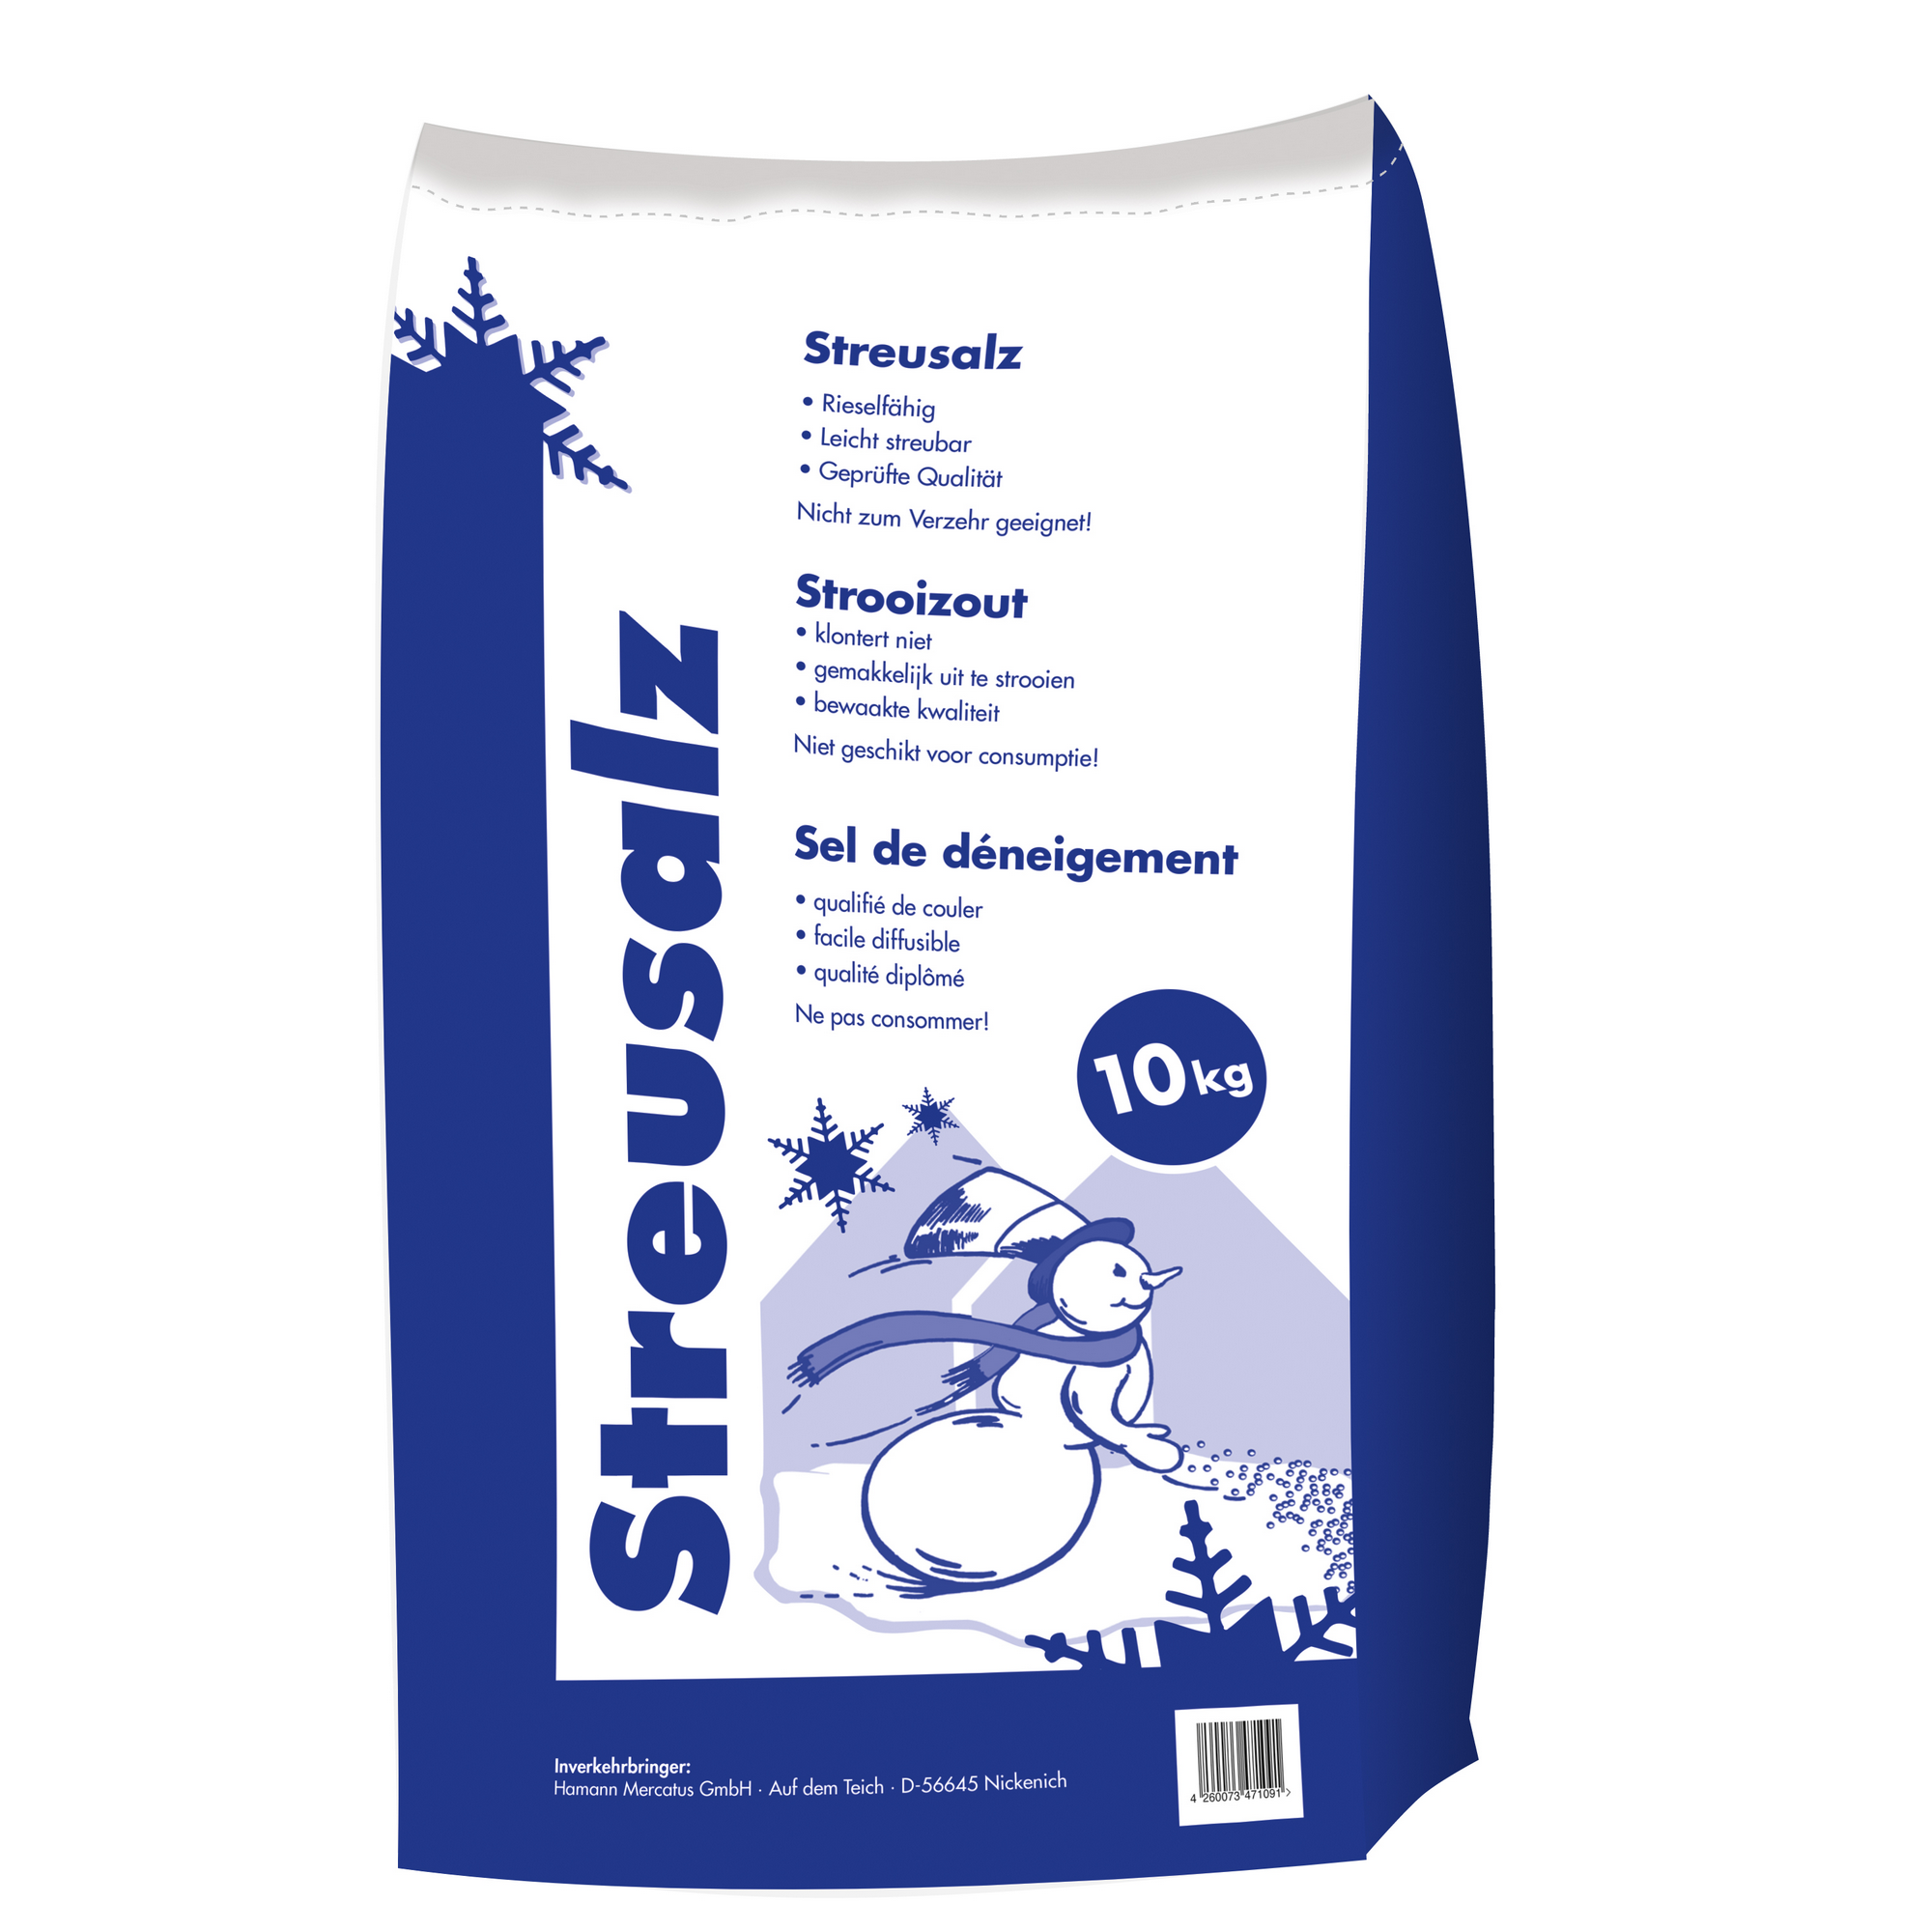 Streusalz 10 kg im Beutel + product picture